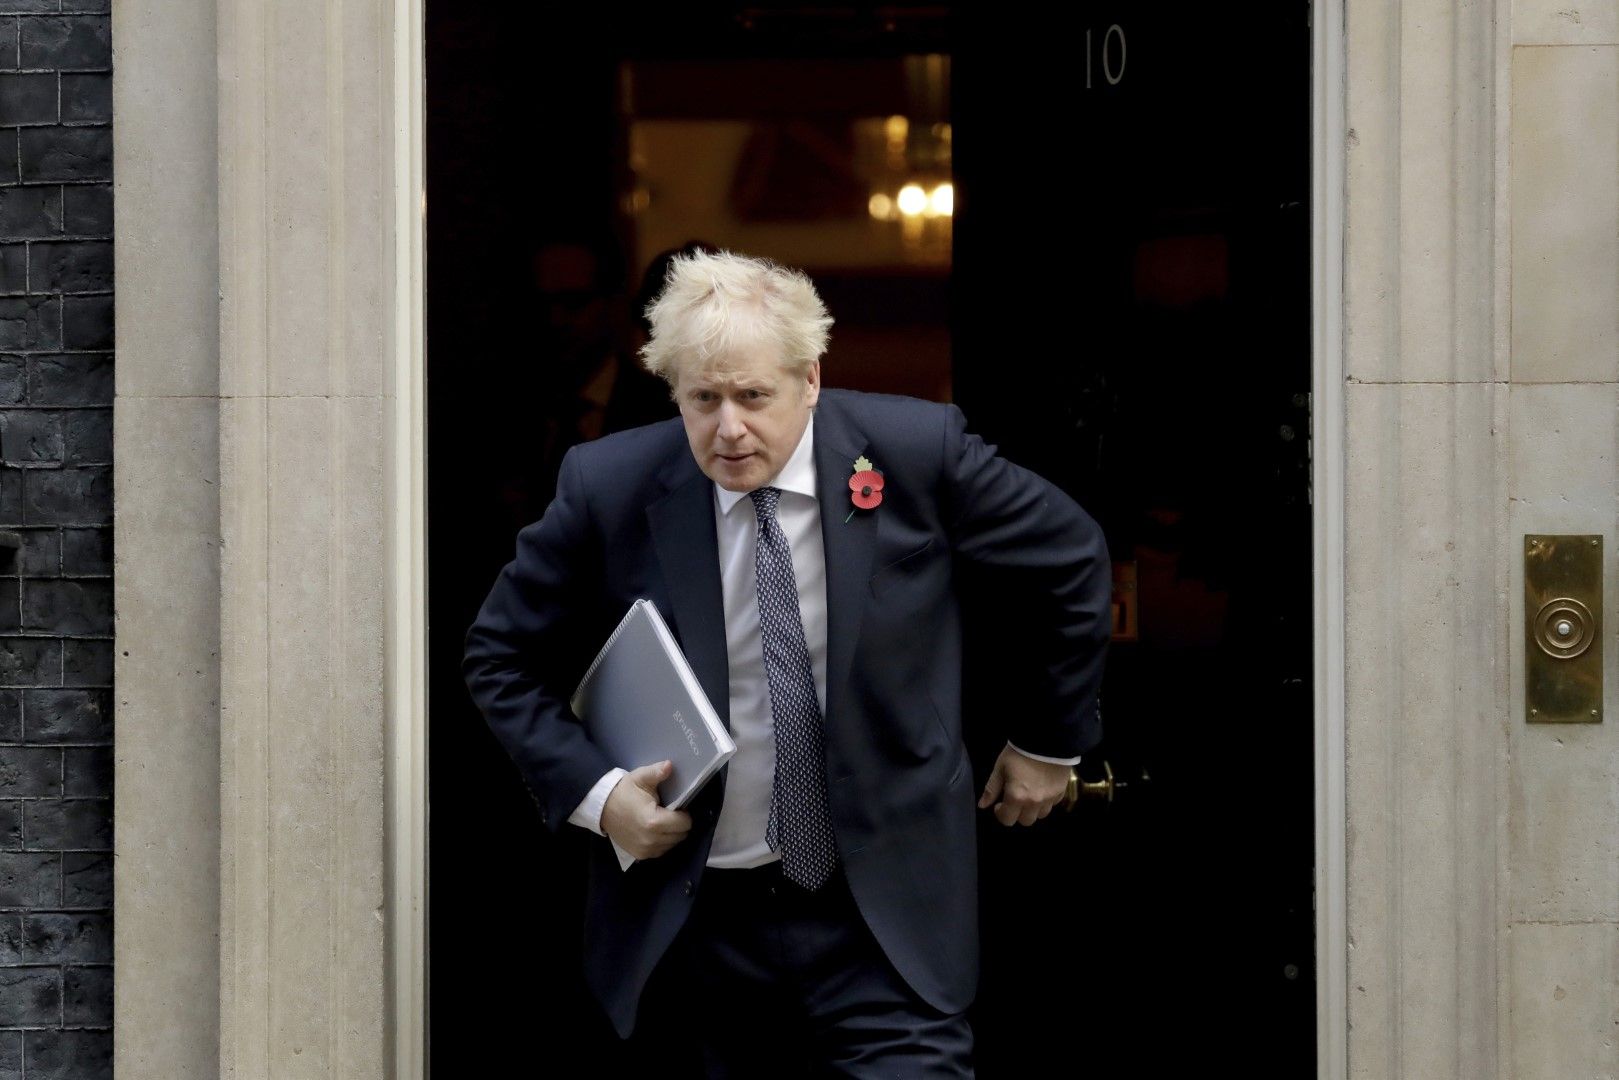 Борис Джонсън забързано напуска Даунинг стрийт 10 в Лондон, снимка от 10 ноември